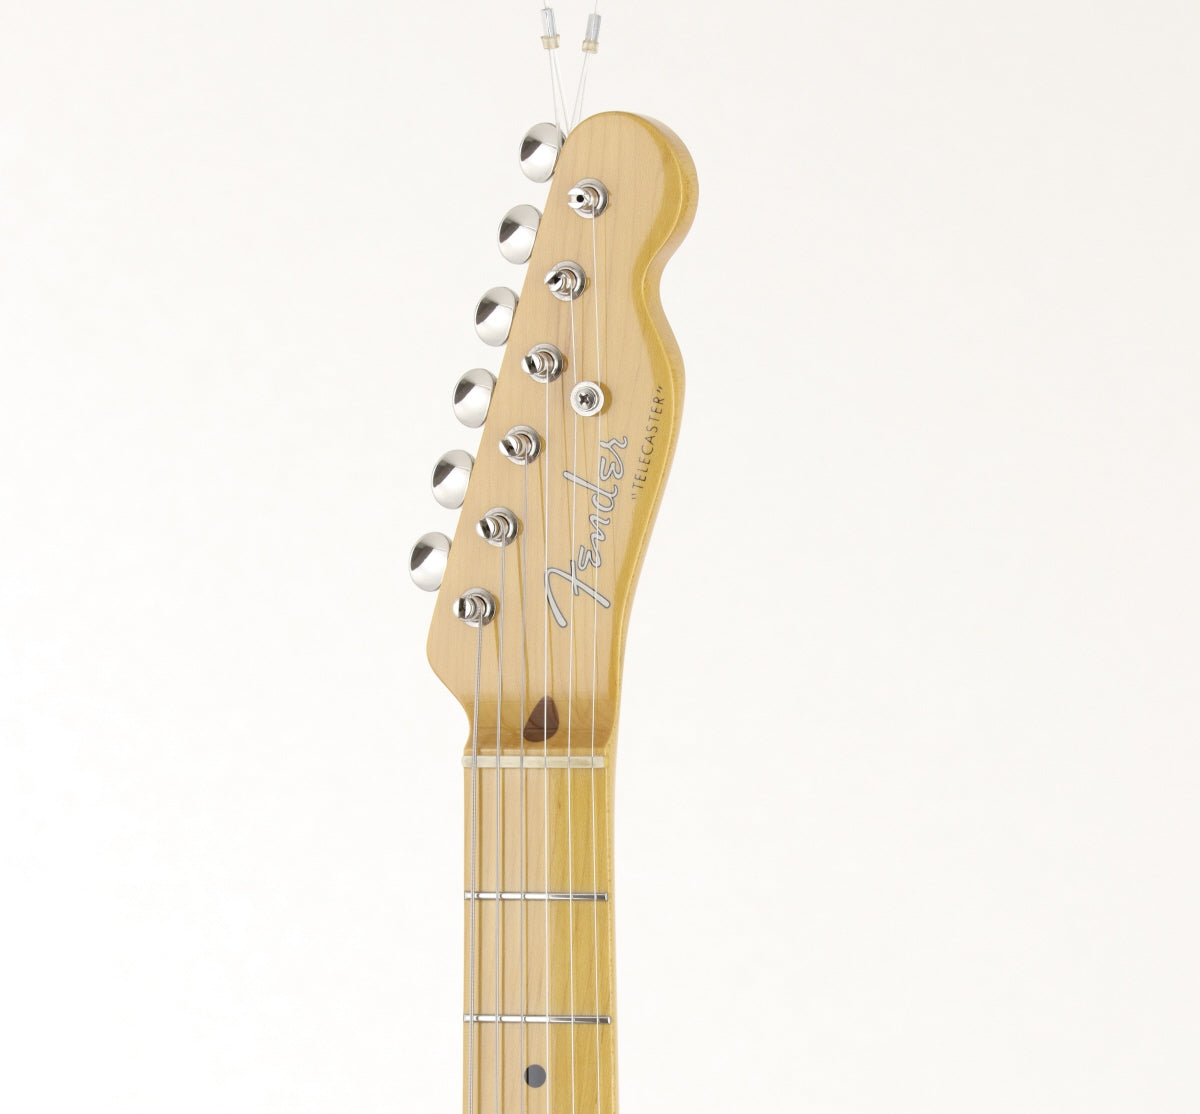 [SN JD12016763] USED Fender JAPAN / TL52 VNT Vintage Natural 2012 [09]